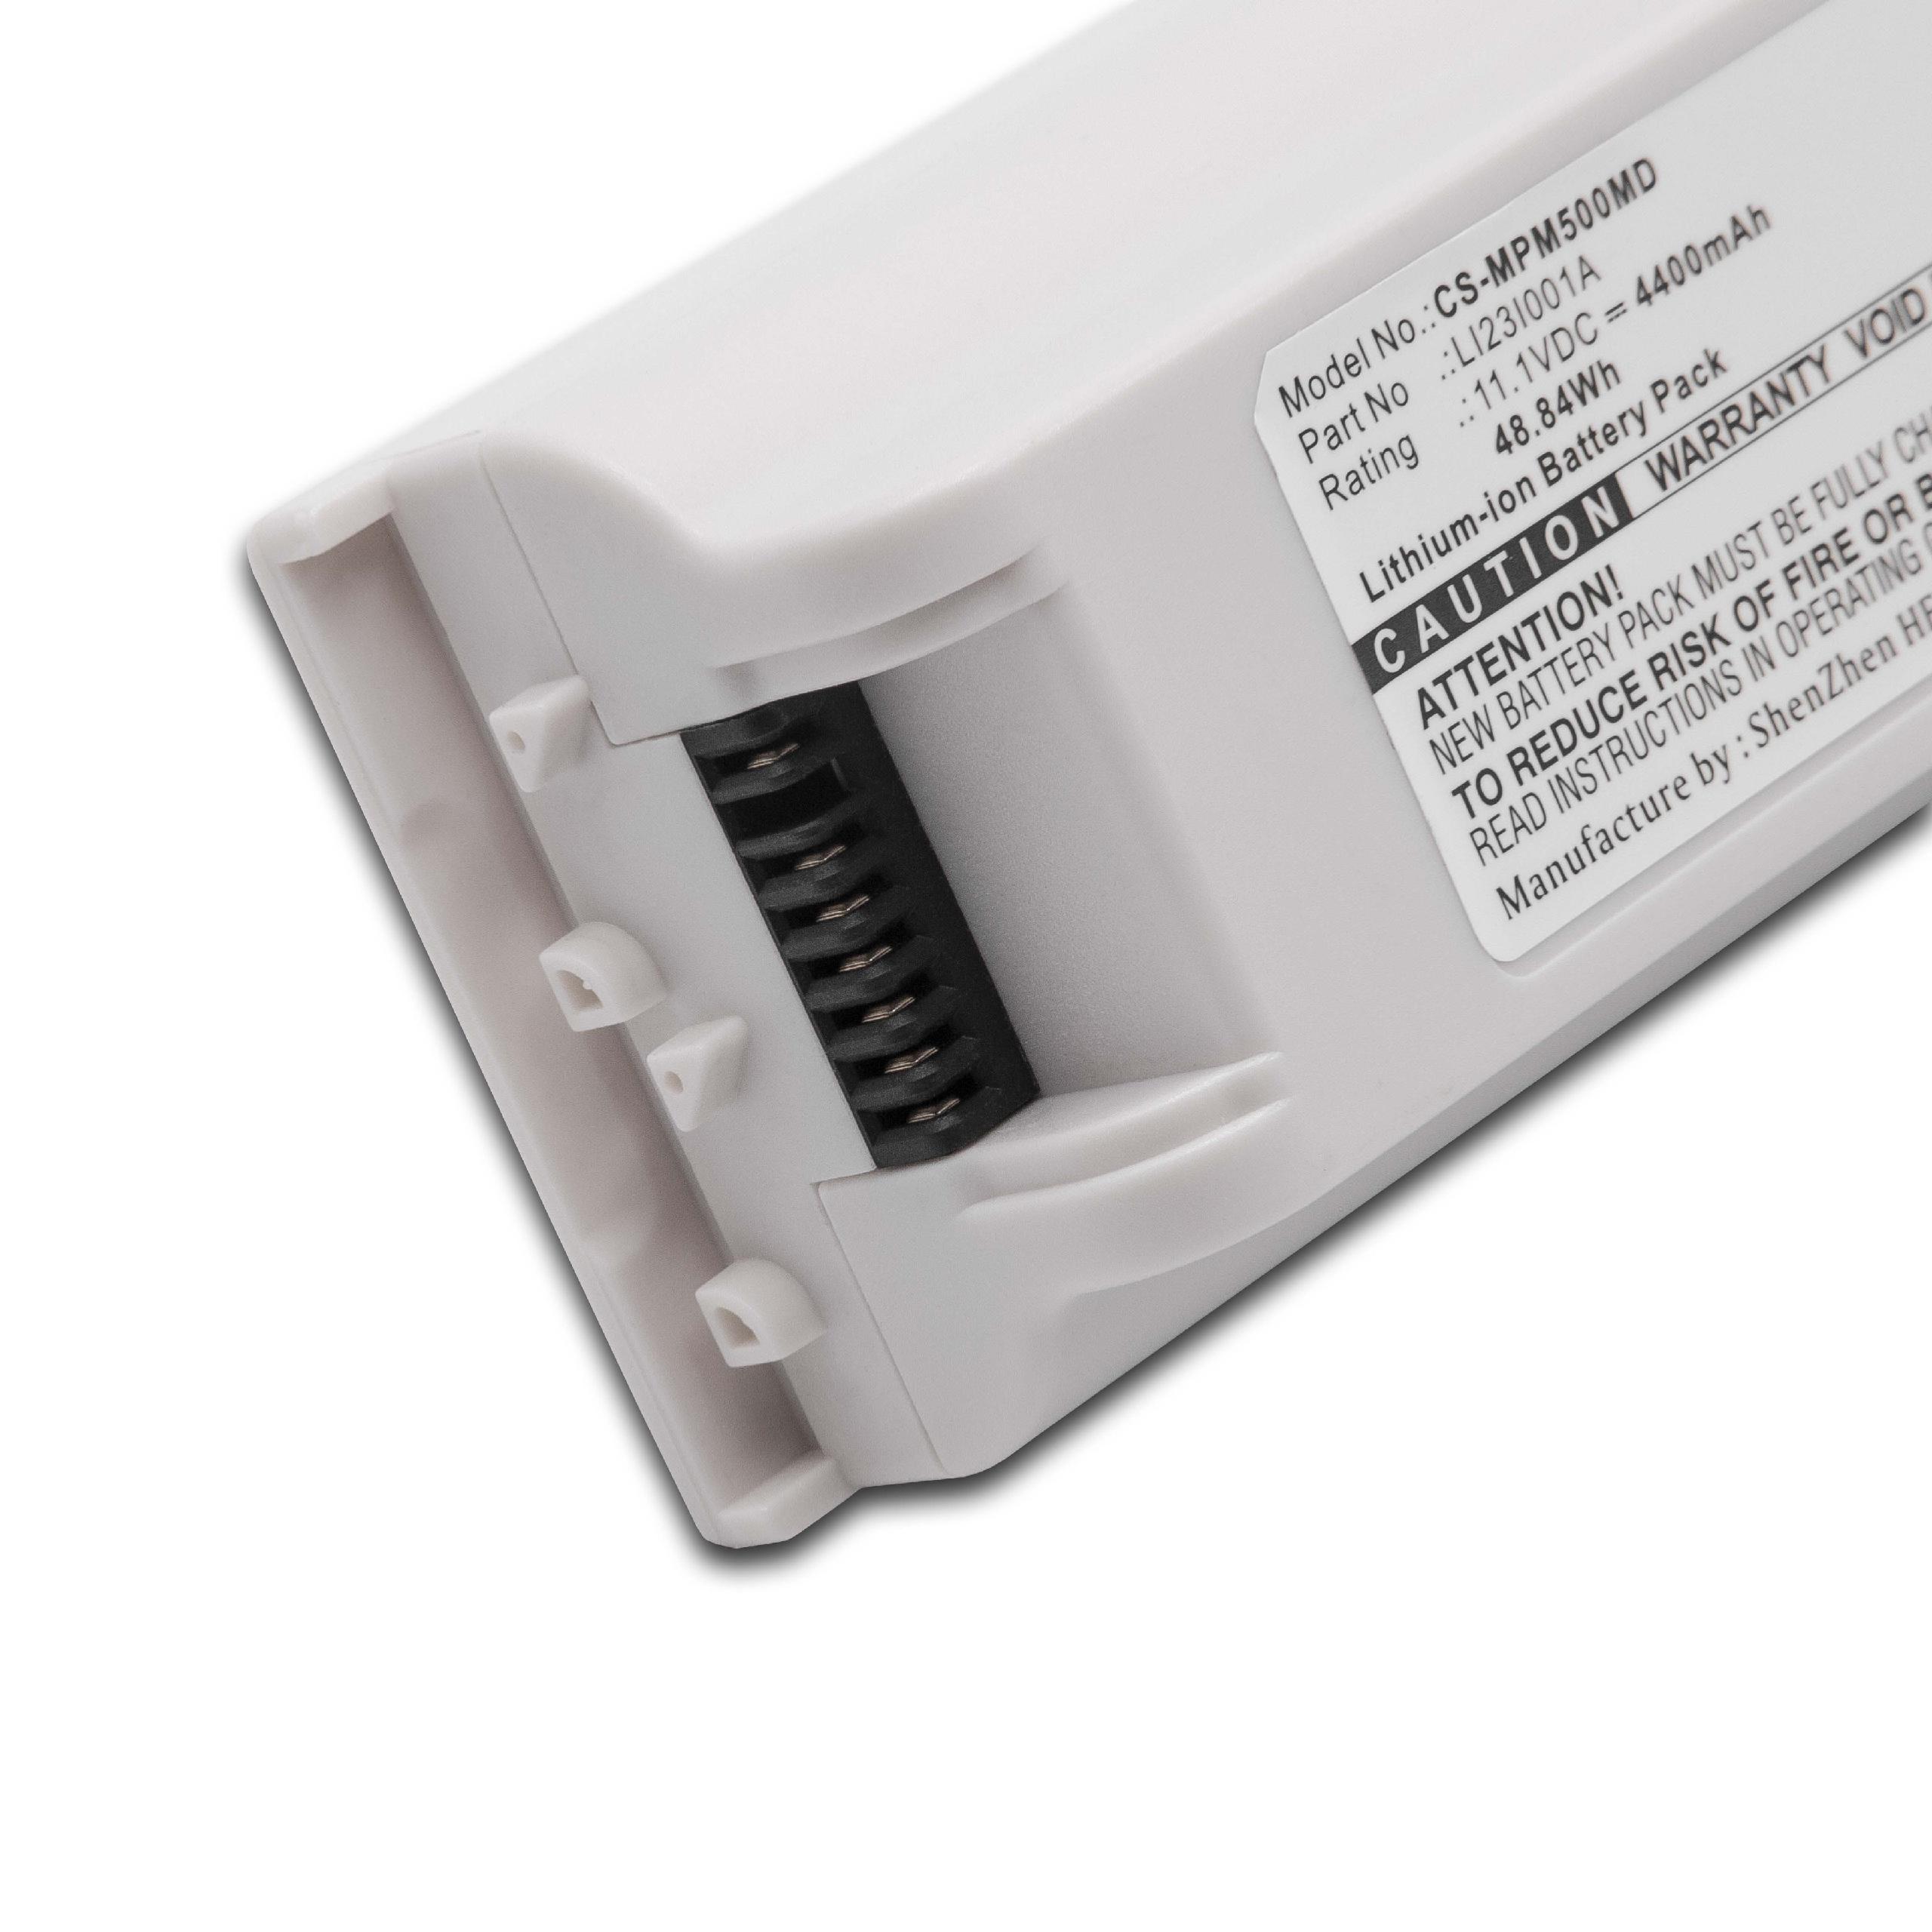 Batteria sostituisce Mindray LI23I001A, 2108-30-66176 per strumenti medici Mindray - 4400mAh 11,1V Li-Ion